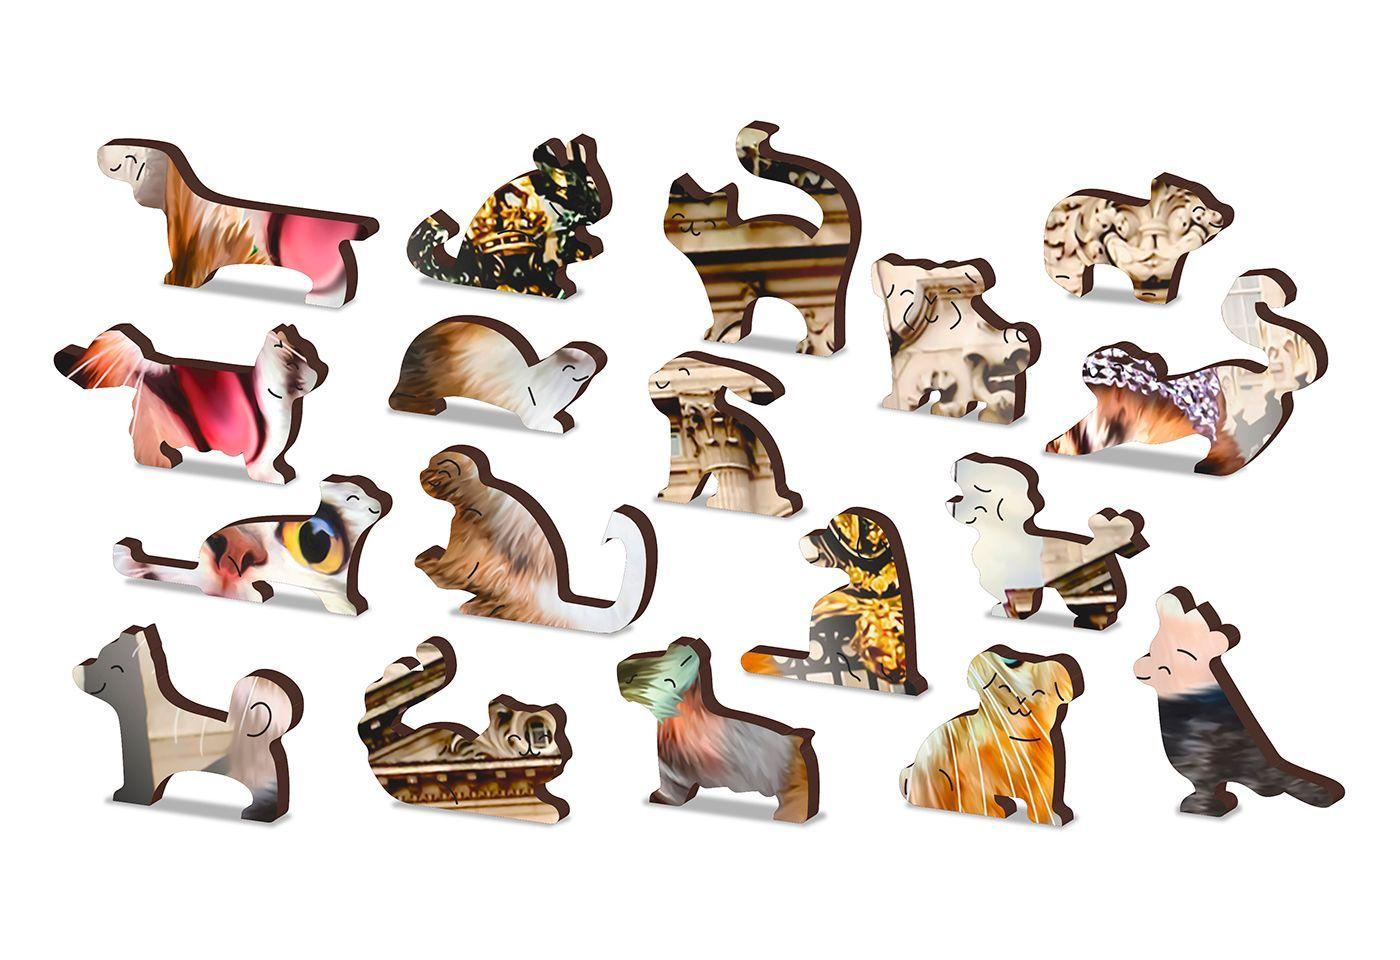 Drewniane Puzzle z figurkami – Kotki w Londynie rozm. M, 200 elementów